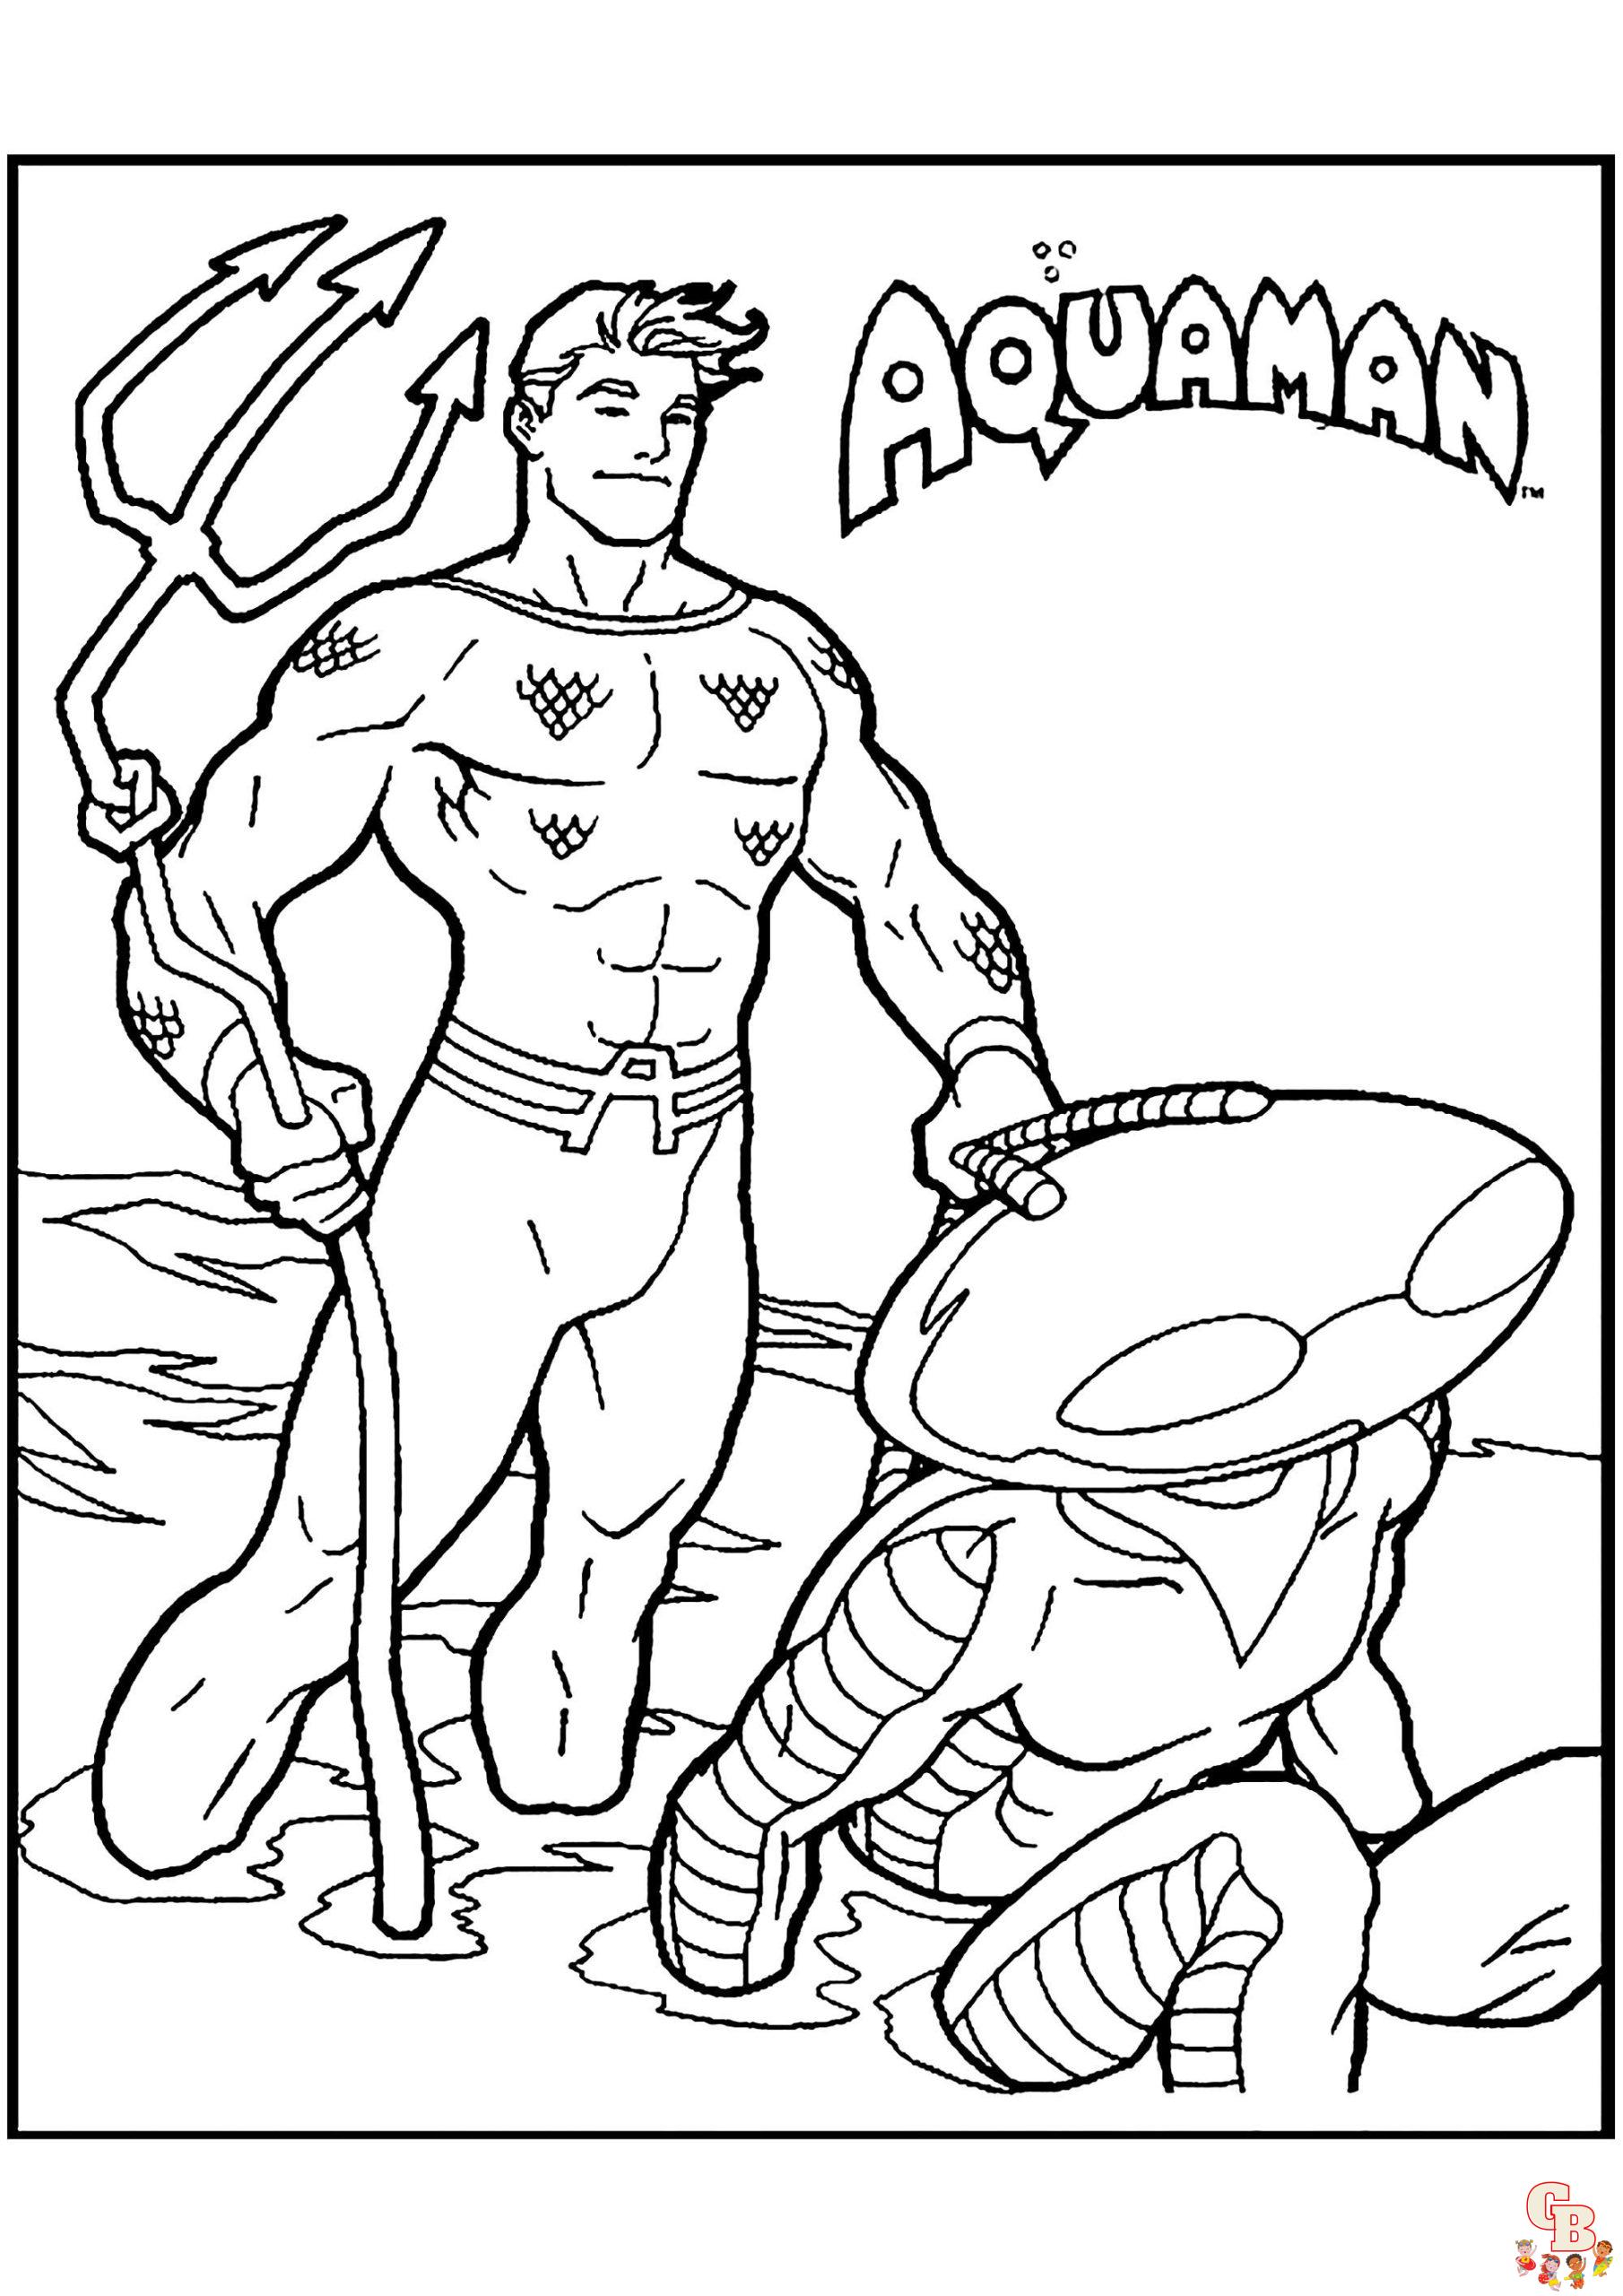 Aquaman kleurplaat